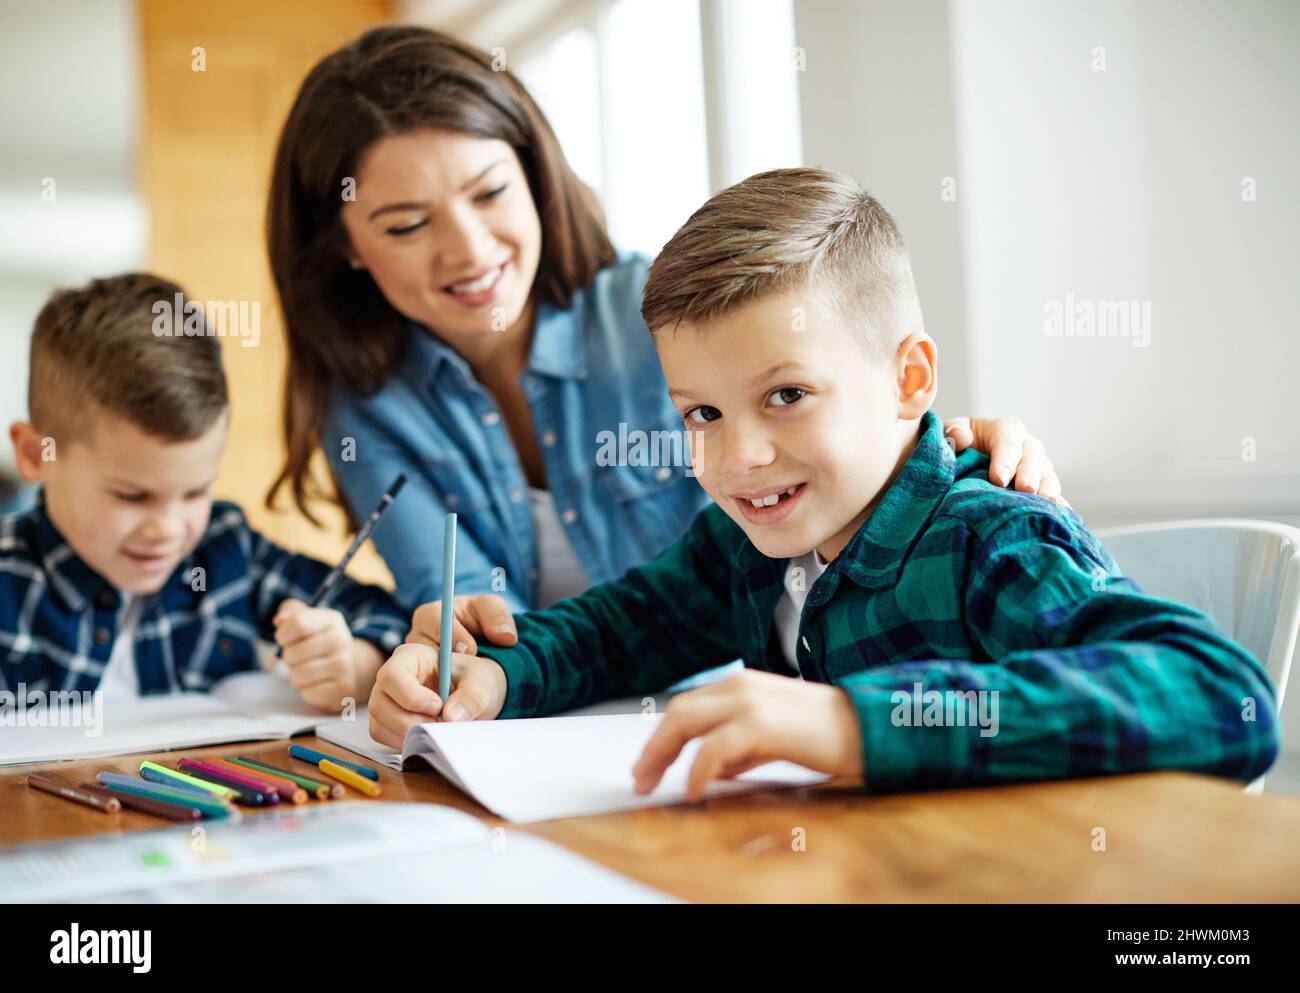 Hausaufgaben Unterricht Bildung Mutter Kinder Sohn Familie Kindheit Kind Lehrer Klassenzimmer Stockfoto